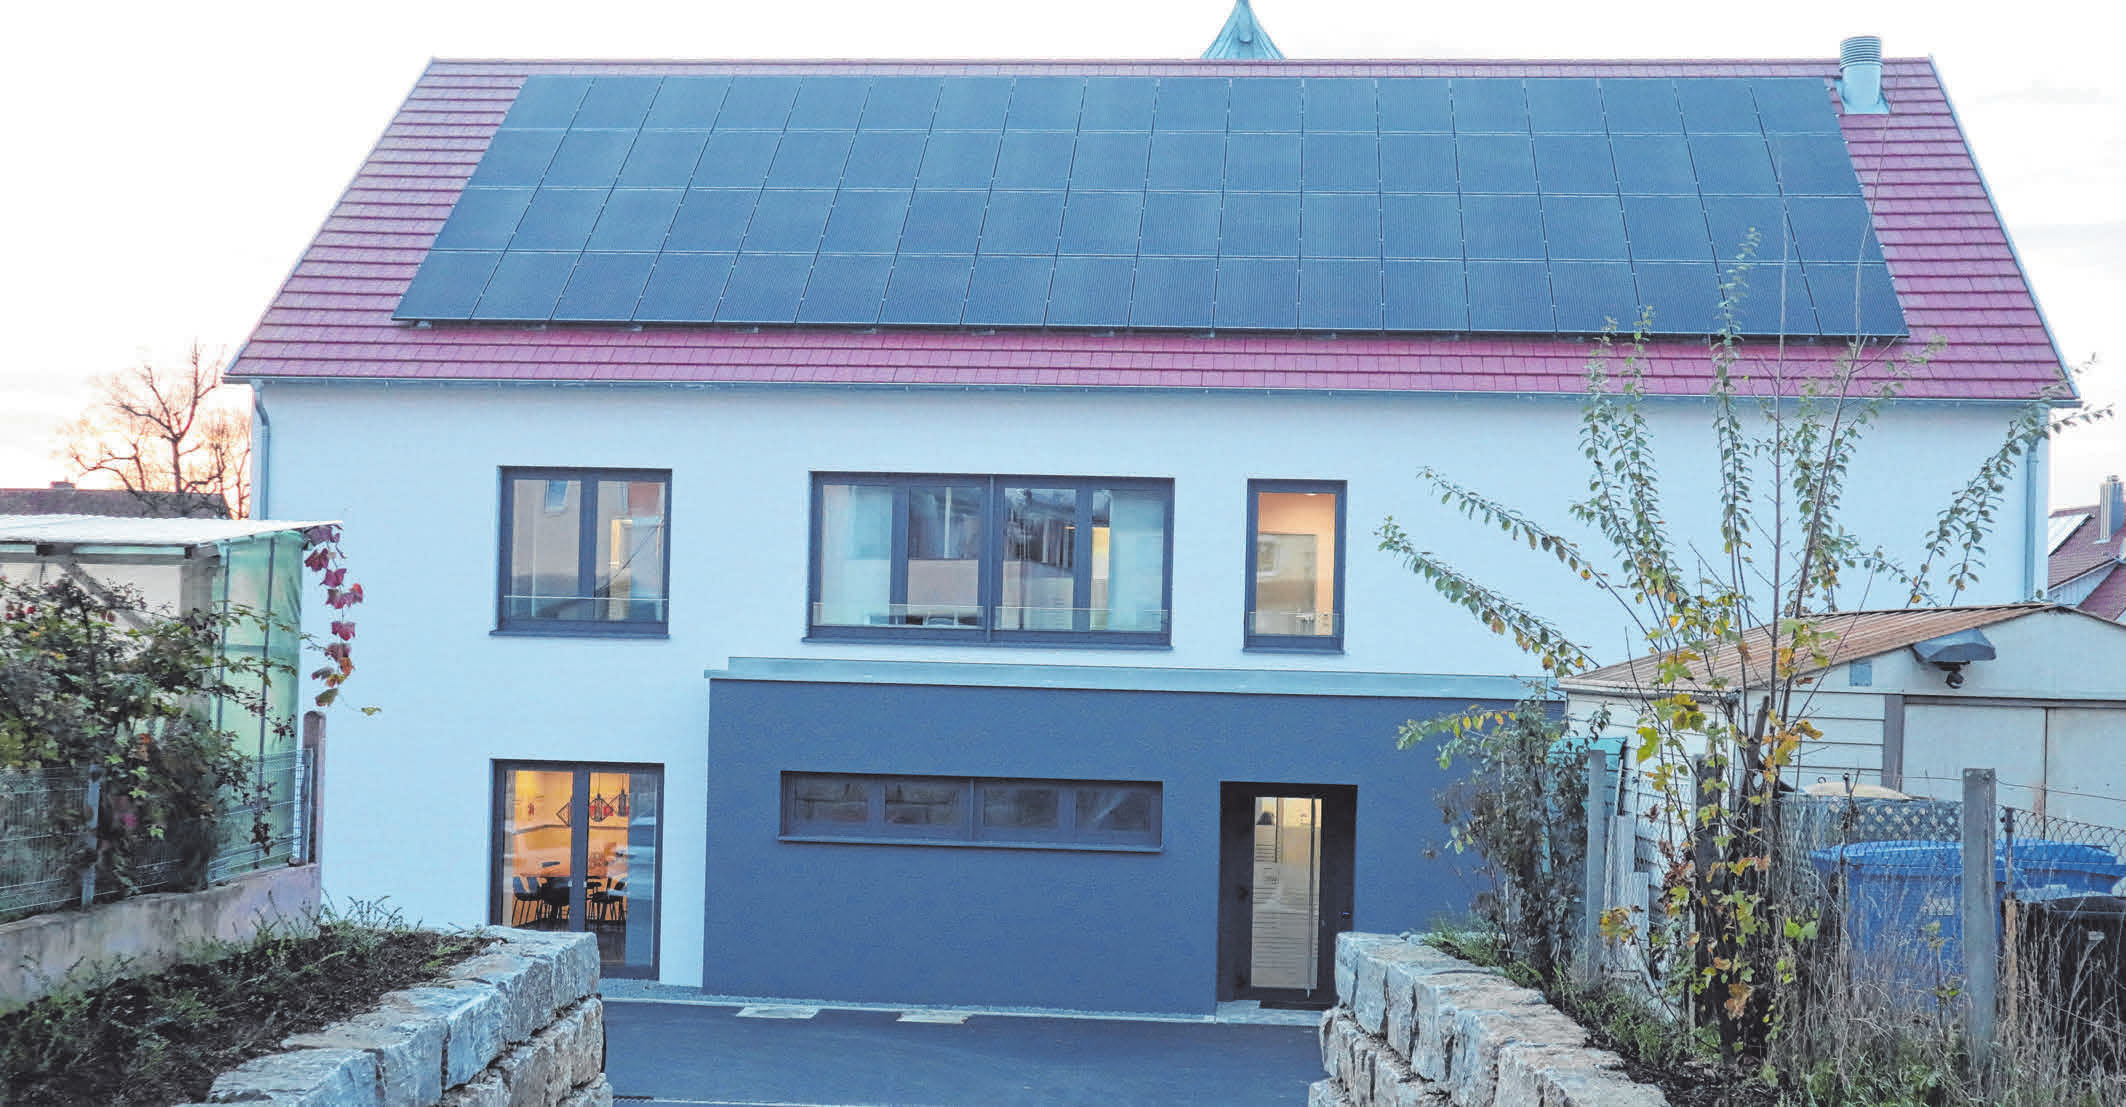 Neues Vorsorge-Center in Schwendi: Neubau mit energetischem Konzept, so Jürgen Rohmer